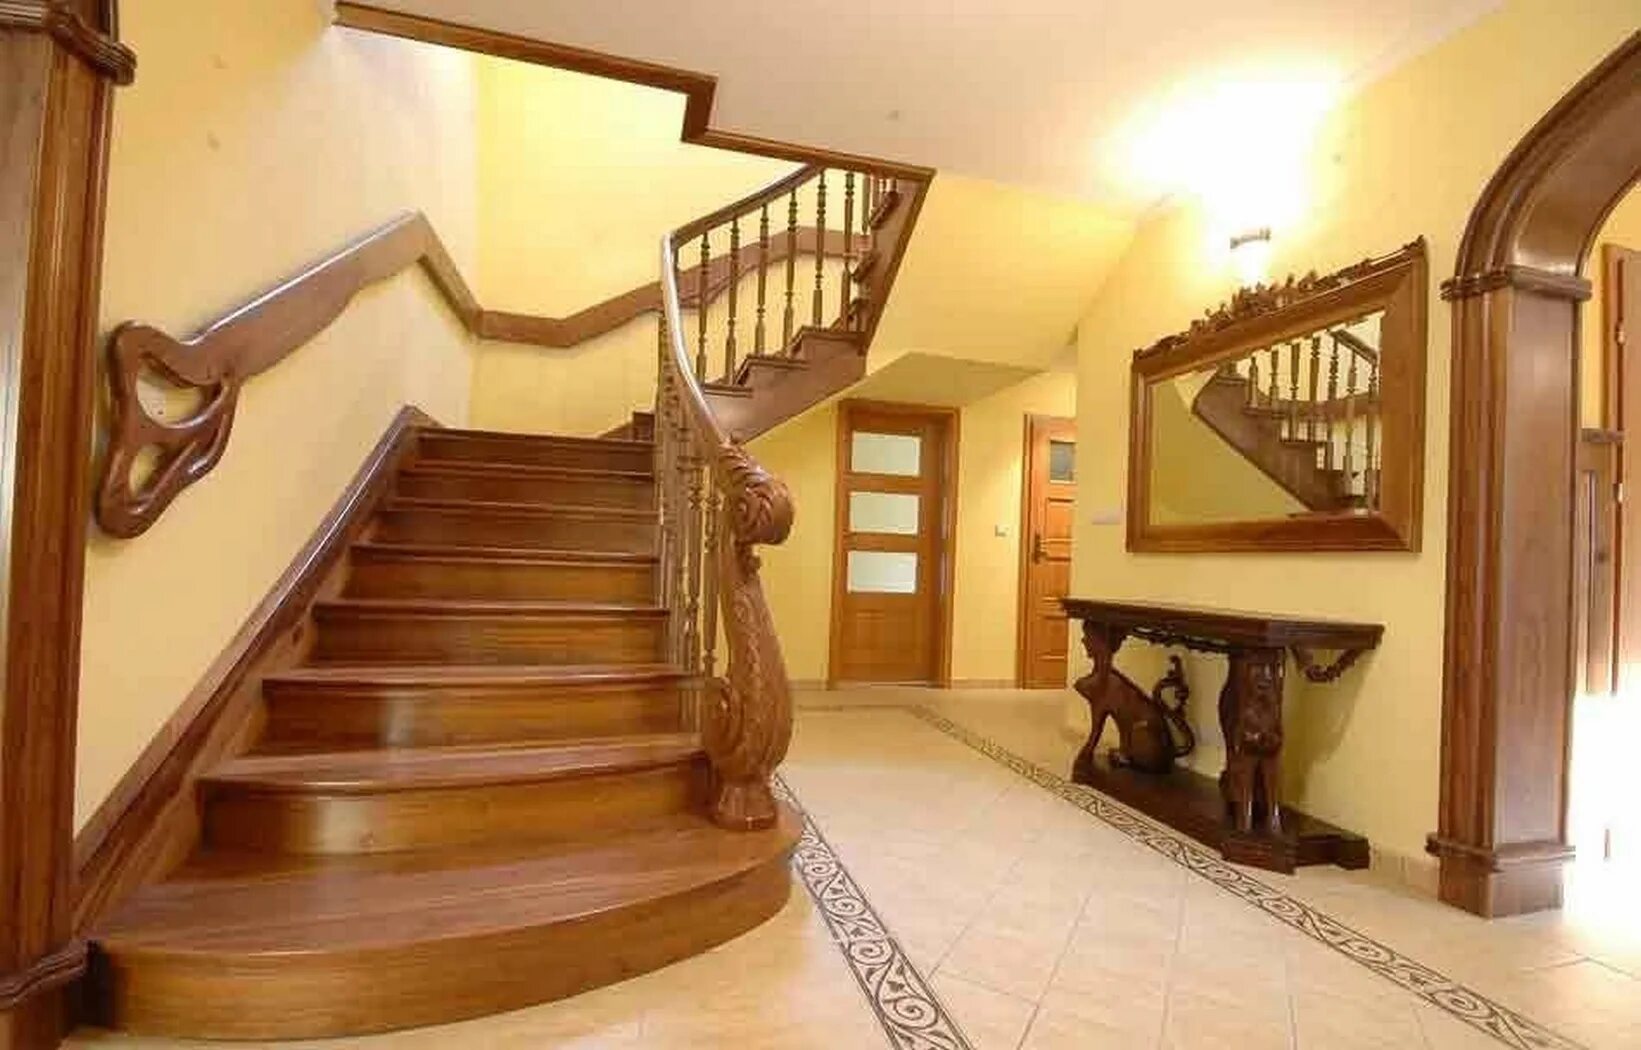 Как попасть на второй этаж. Лестница в доме. Красивые деревянные лестницы. Лестница в частном доме. Красивые лестницы на второй этаж.